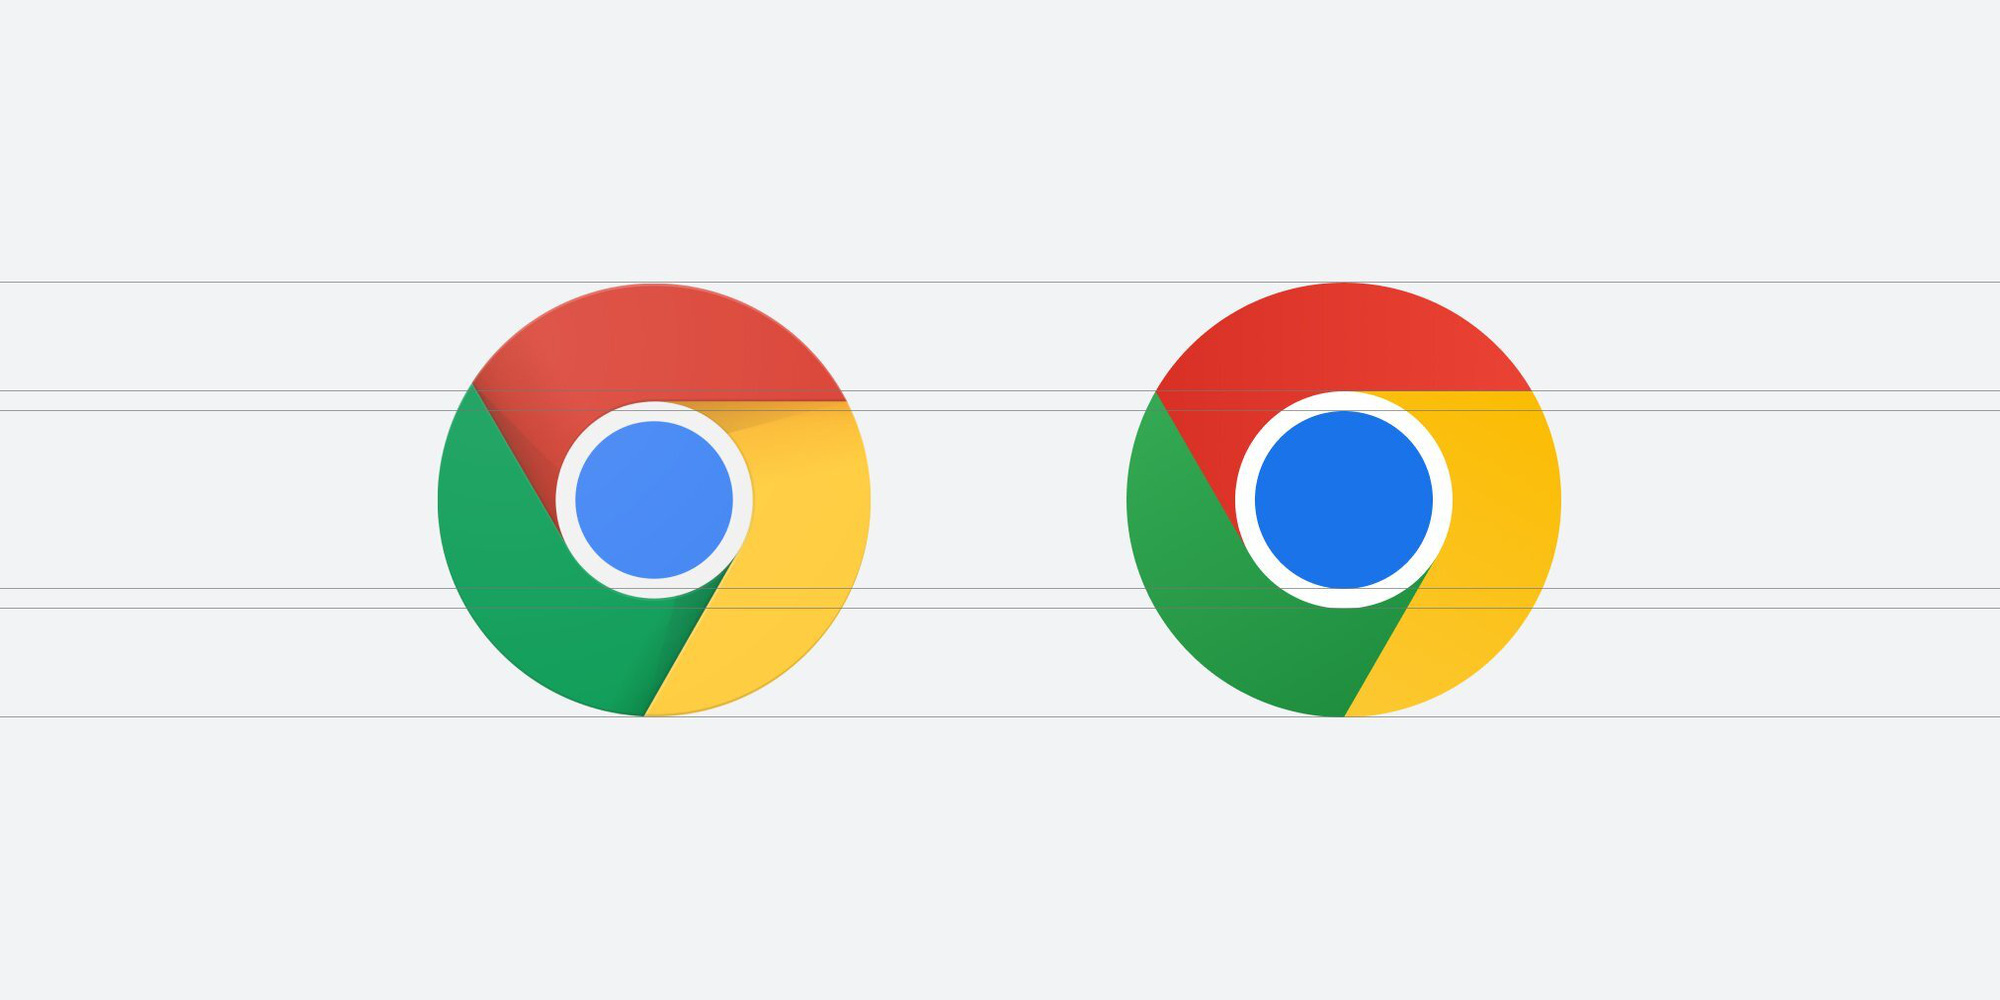 Logo mới của Google Chrome: Đã đến lúc nâng cấp Chrome với logo mới và thanh thoát hơn. Với thiết kế tối giản và hiện đại, logo mới của Chrome sẽ giúp cho trải nghiệm trình duyệt Web của bạn trở nên thú vị hơn bao giờ hết. Hãy trải nghiệm và cảm nhận sự thay đổi vượt bậc này!